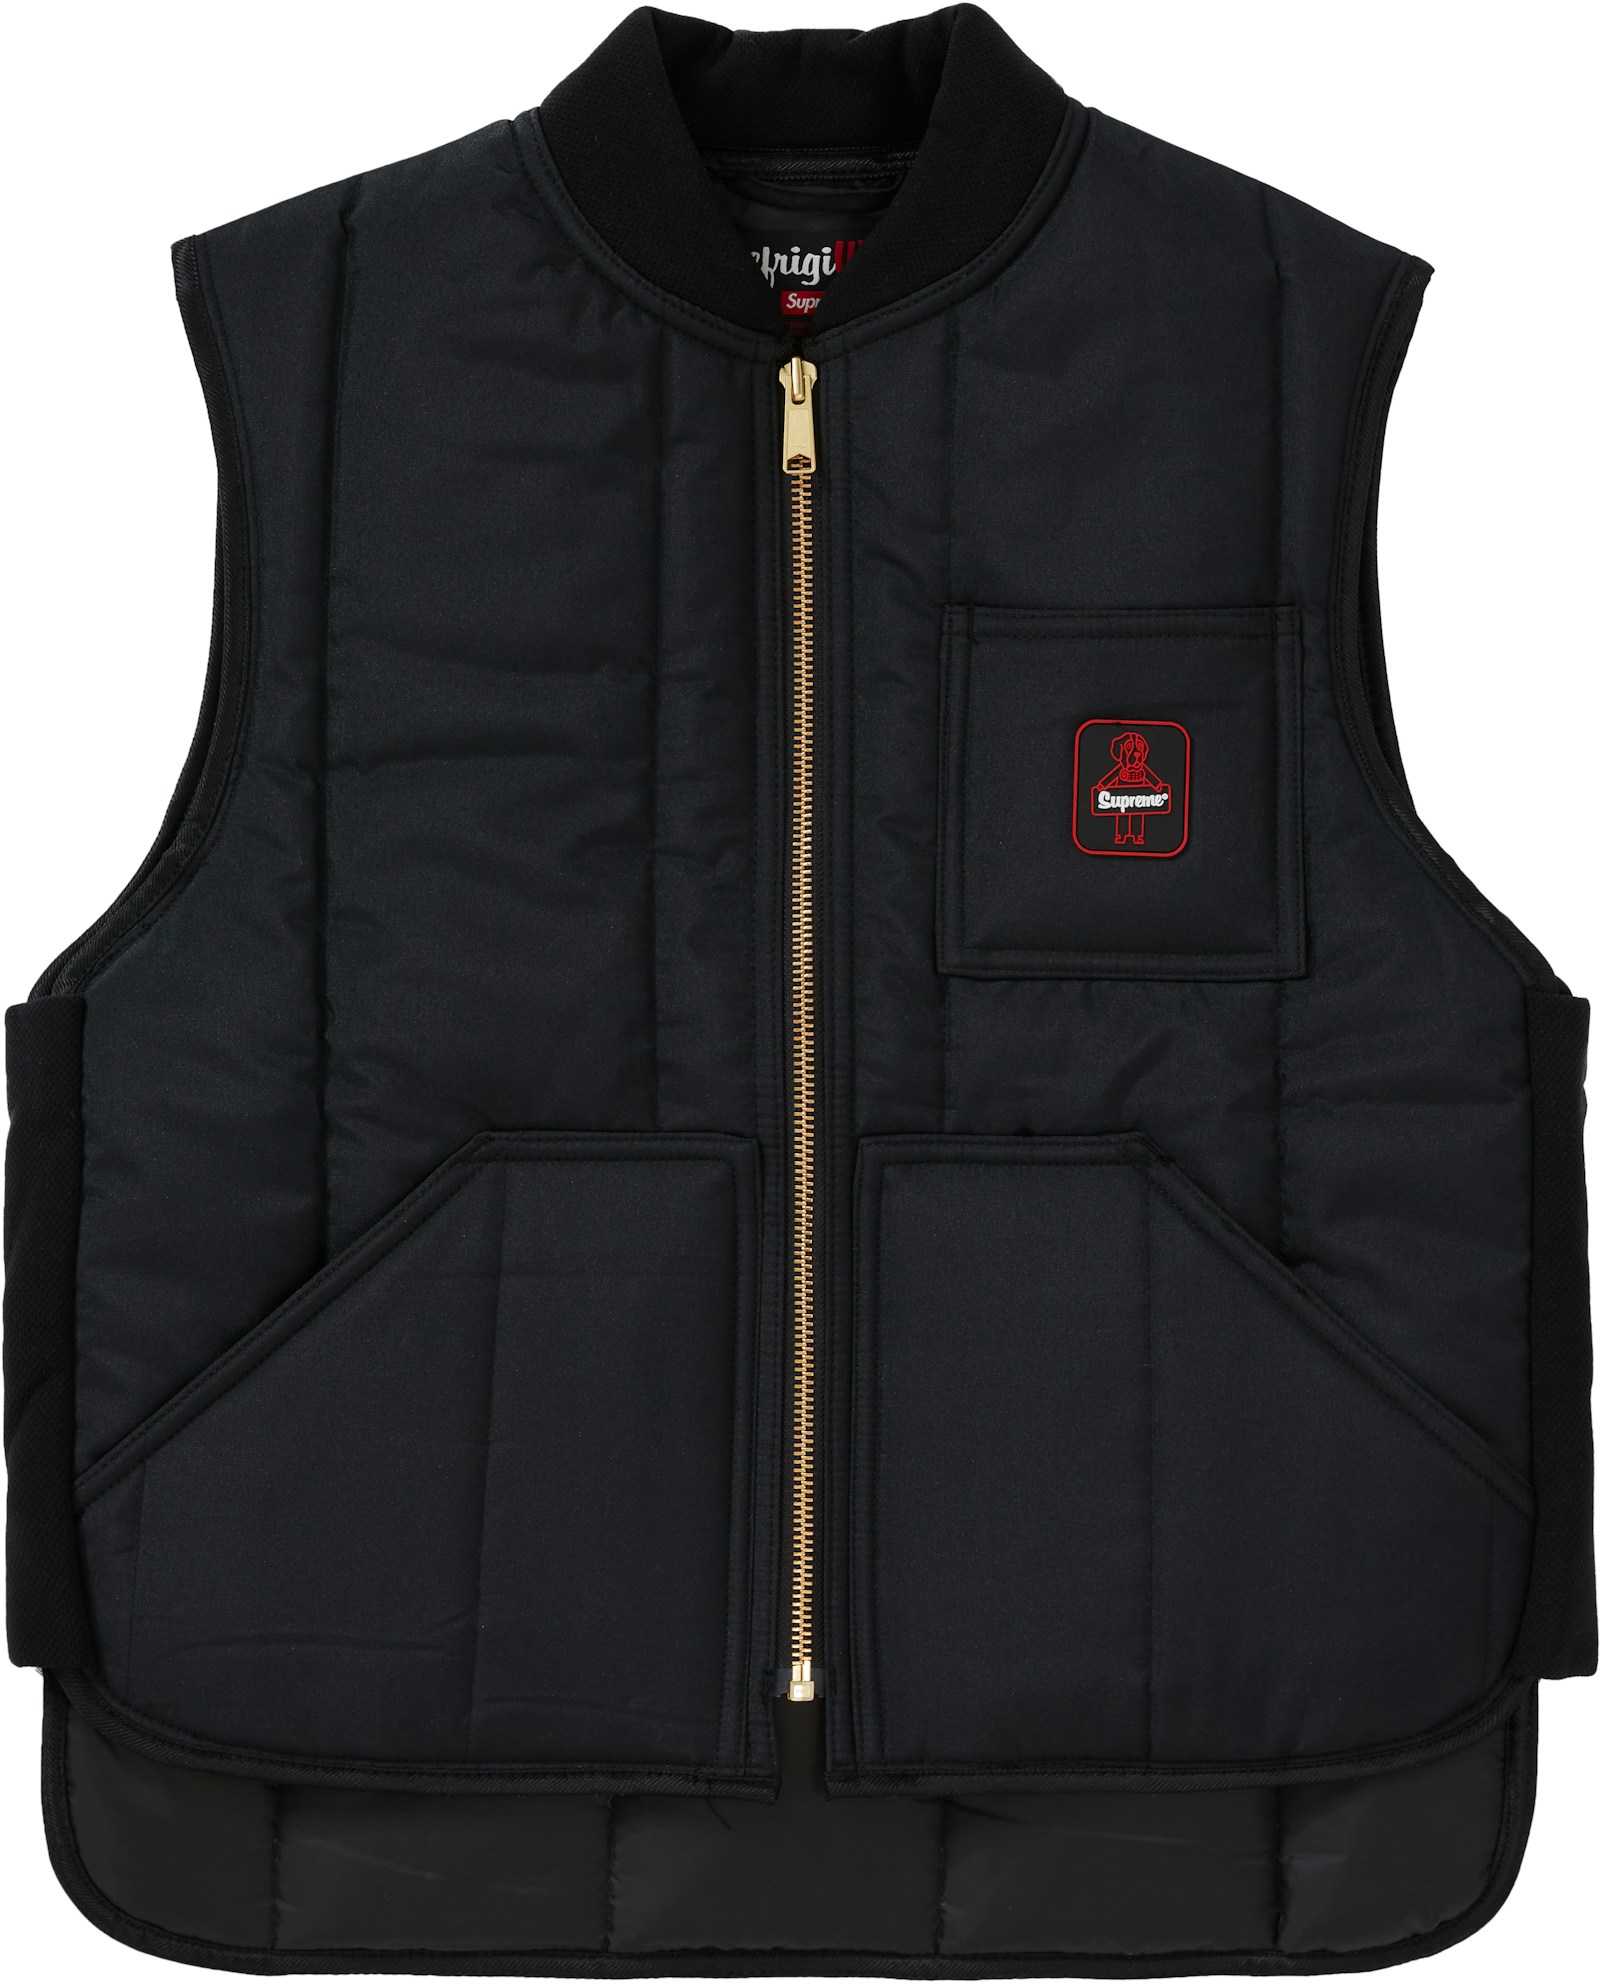 Supreme RefrigiWear Insulated Iron-Tuff Vest Black - FW20